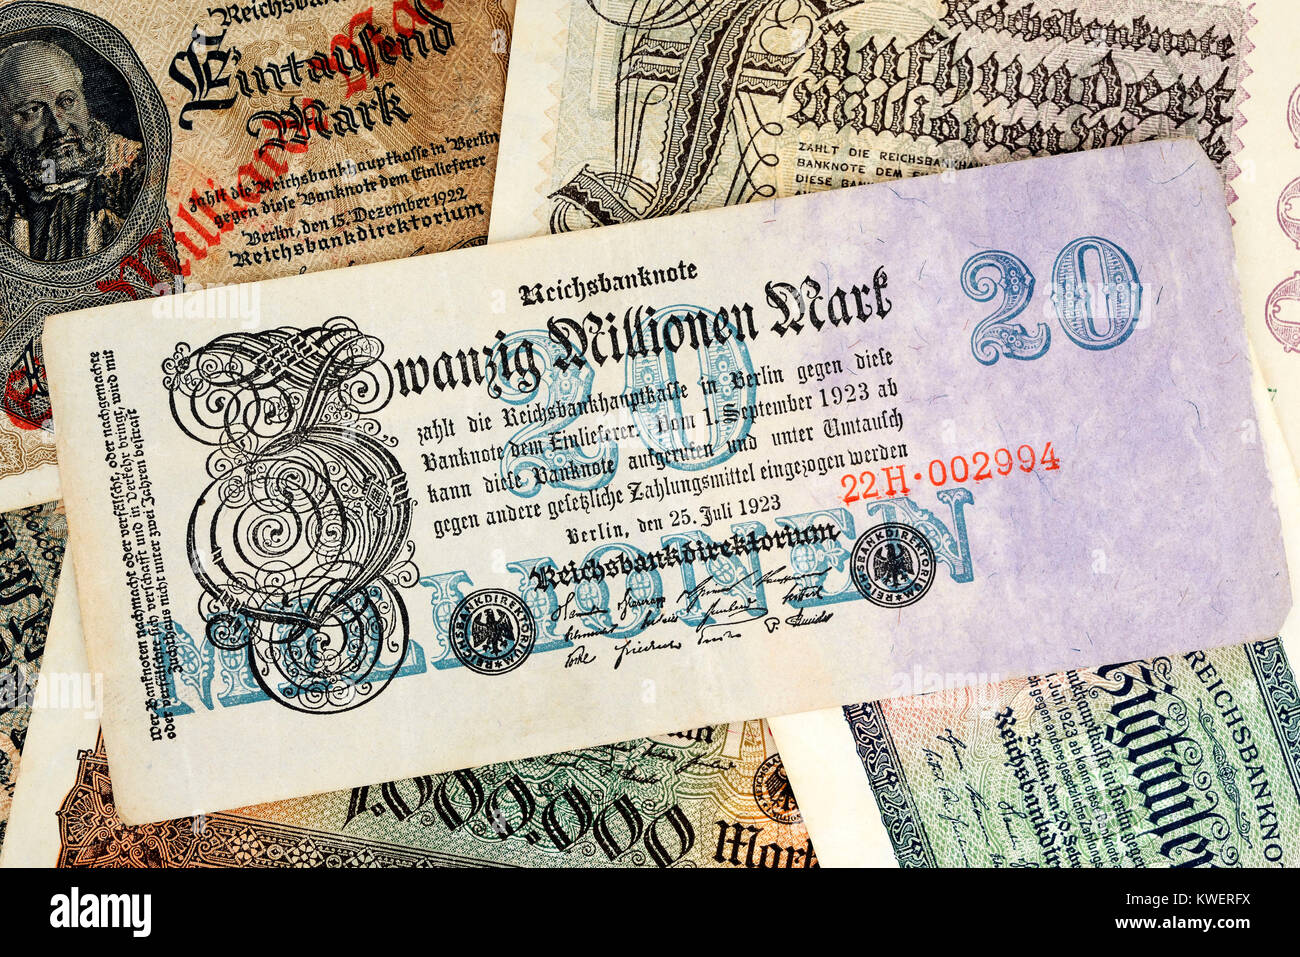 Alte deutsche Inflation Banknoten, Alte Deutsche Inflationen-Geldscheine  Stockfotografie - Alamy